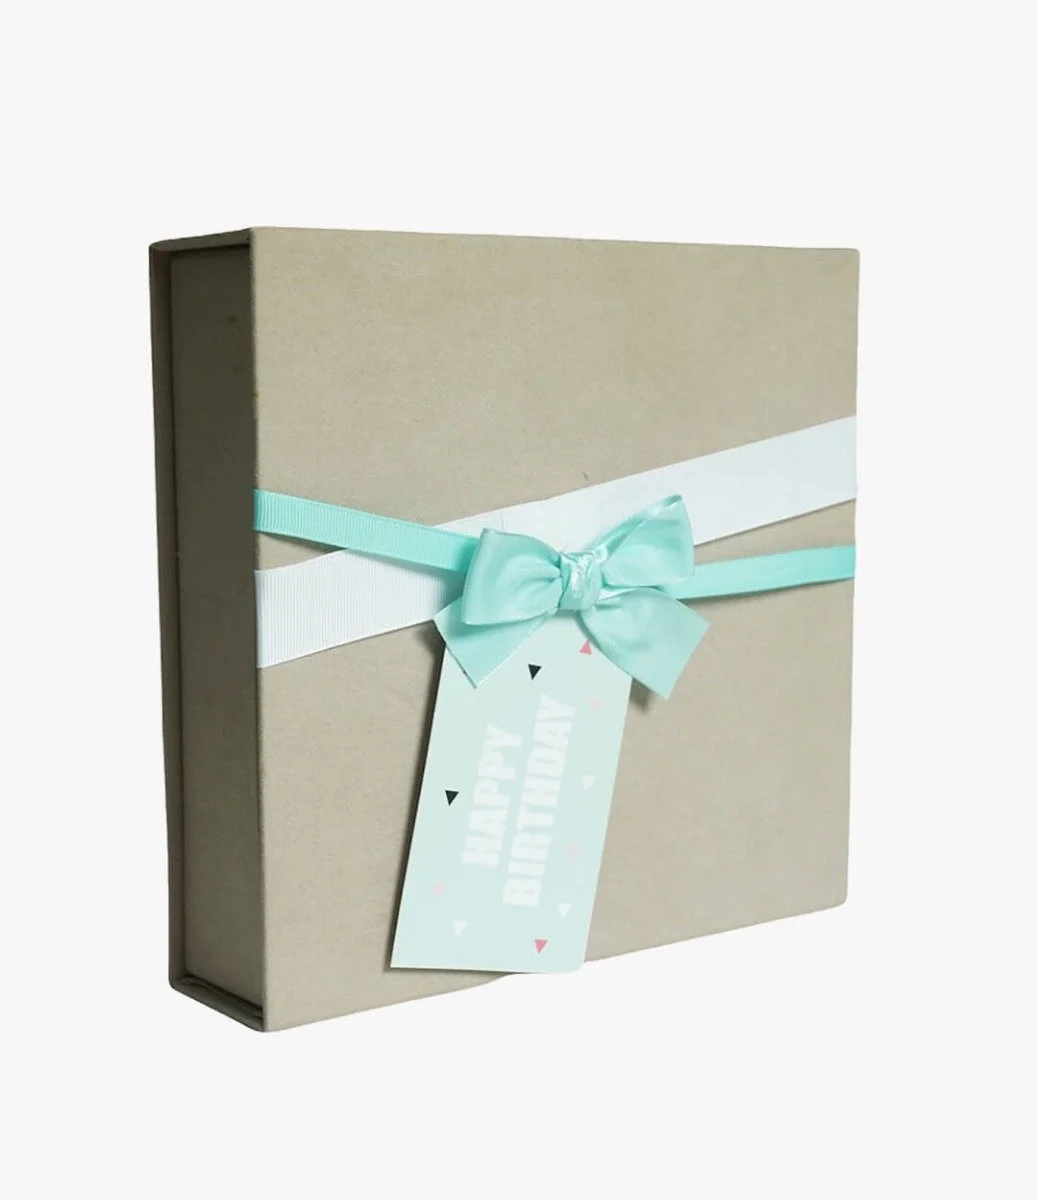 Birthday Wishes - Chocolate Gift Box